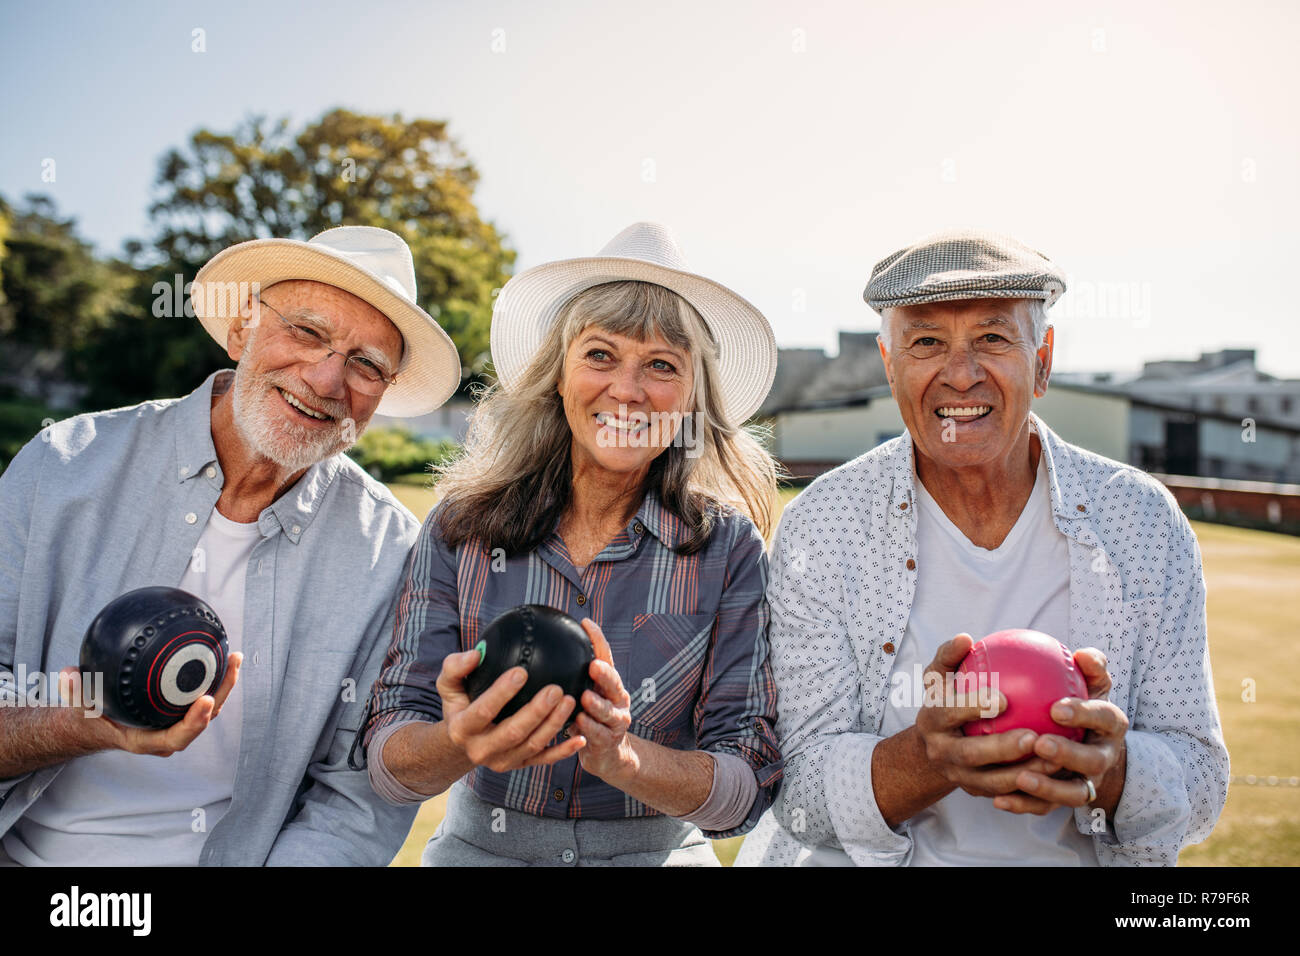 Lächelnde ältere Leute sitzen in einem Rasen, Boccia. Zwei Männer und eine Frau genießen das Spiel Boule sitzen zusammen in einem Park. Stockfoto